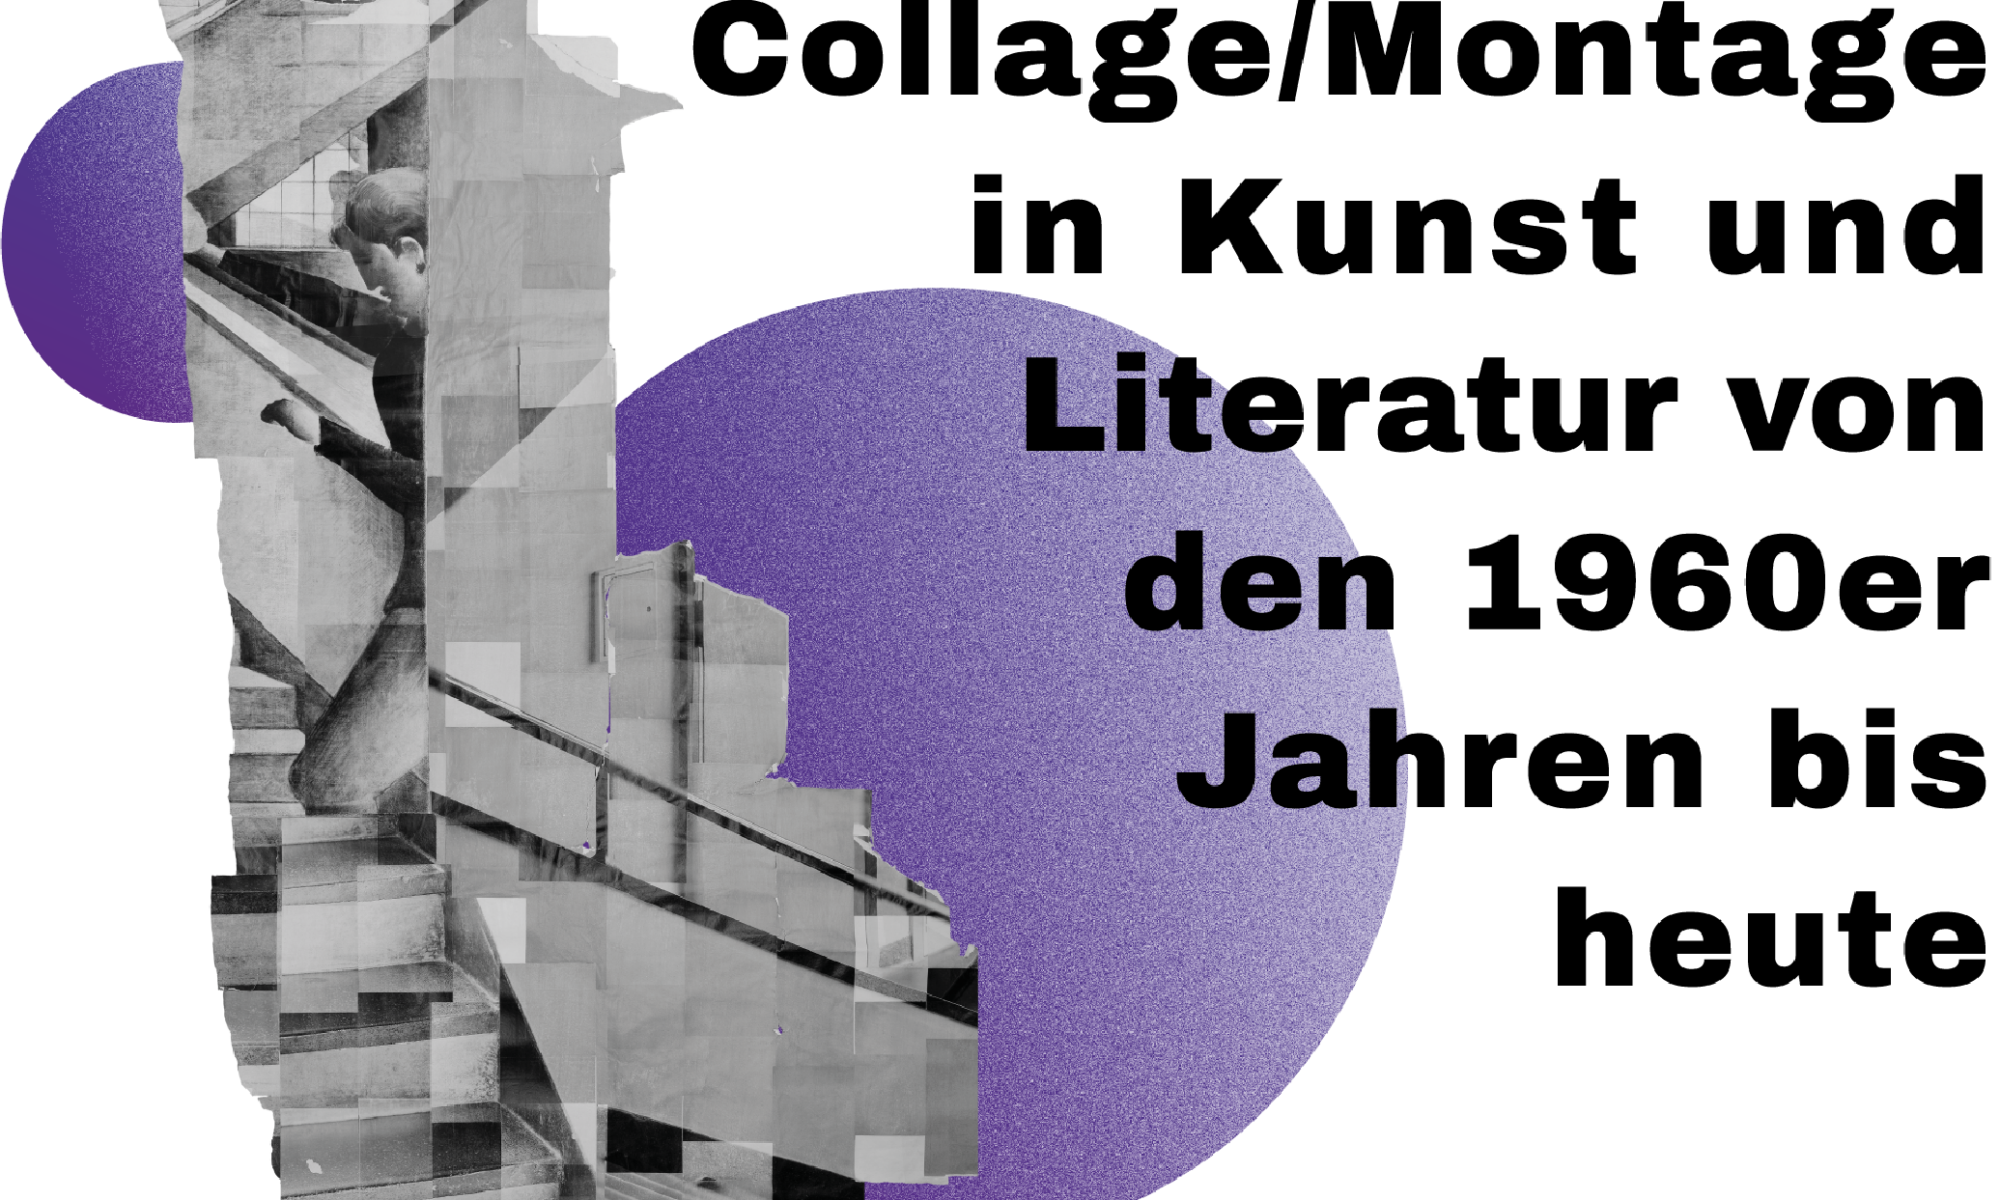 Artist Talk mit Katharina Gaenssler zur internationalen und interdisziplinären Tagung der Friedrich-Schiller-Universität Jena "Collage/Montage in Kunst und Literatur von den 1960er Jahren bis heute